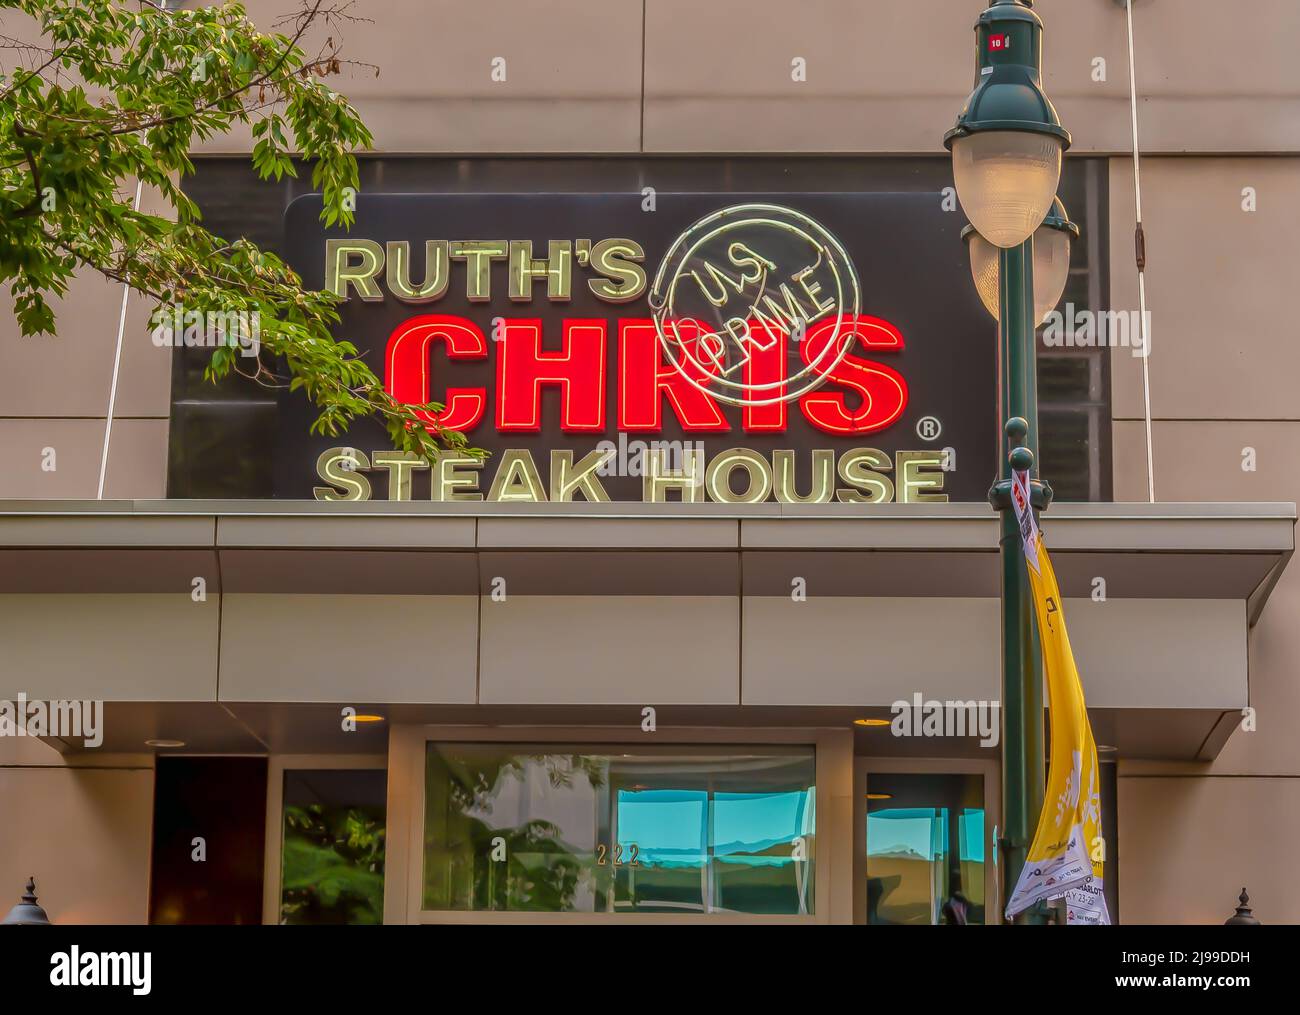 Horizontale Außenfassade mit Marken- und Logo-Beschilderung für das „Ruth's Chris“ Steak House im weichen Licht von Baumzweigen, Laternenpfosten und beleuchteten Neonröhren. Stockfoto